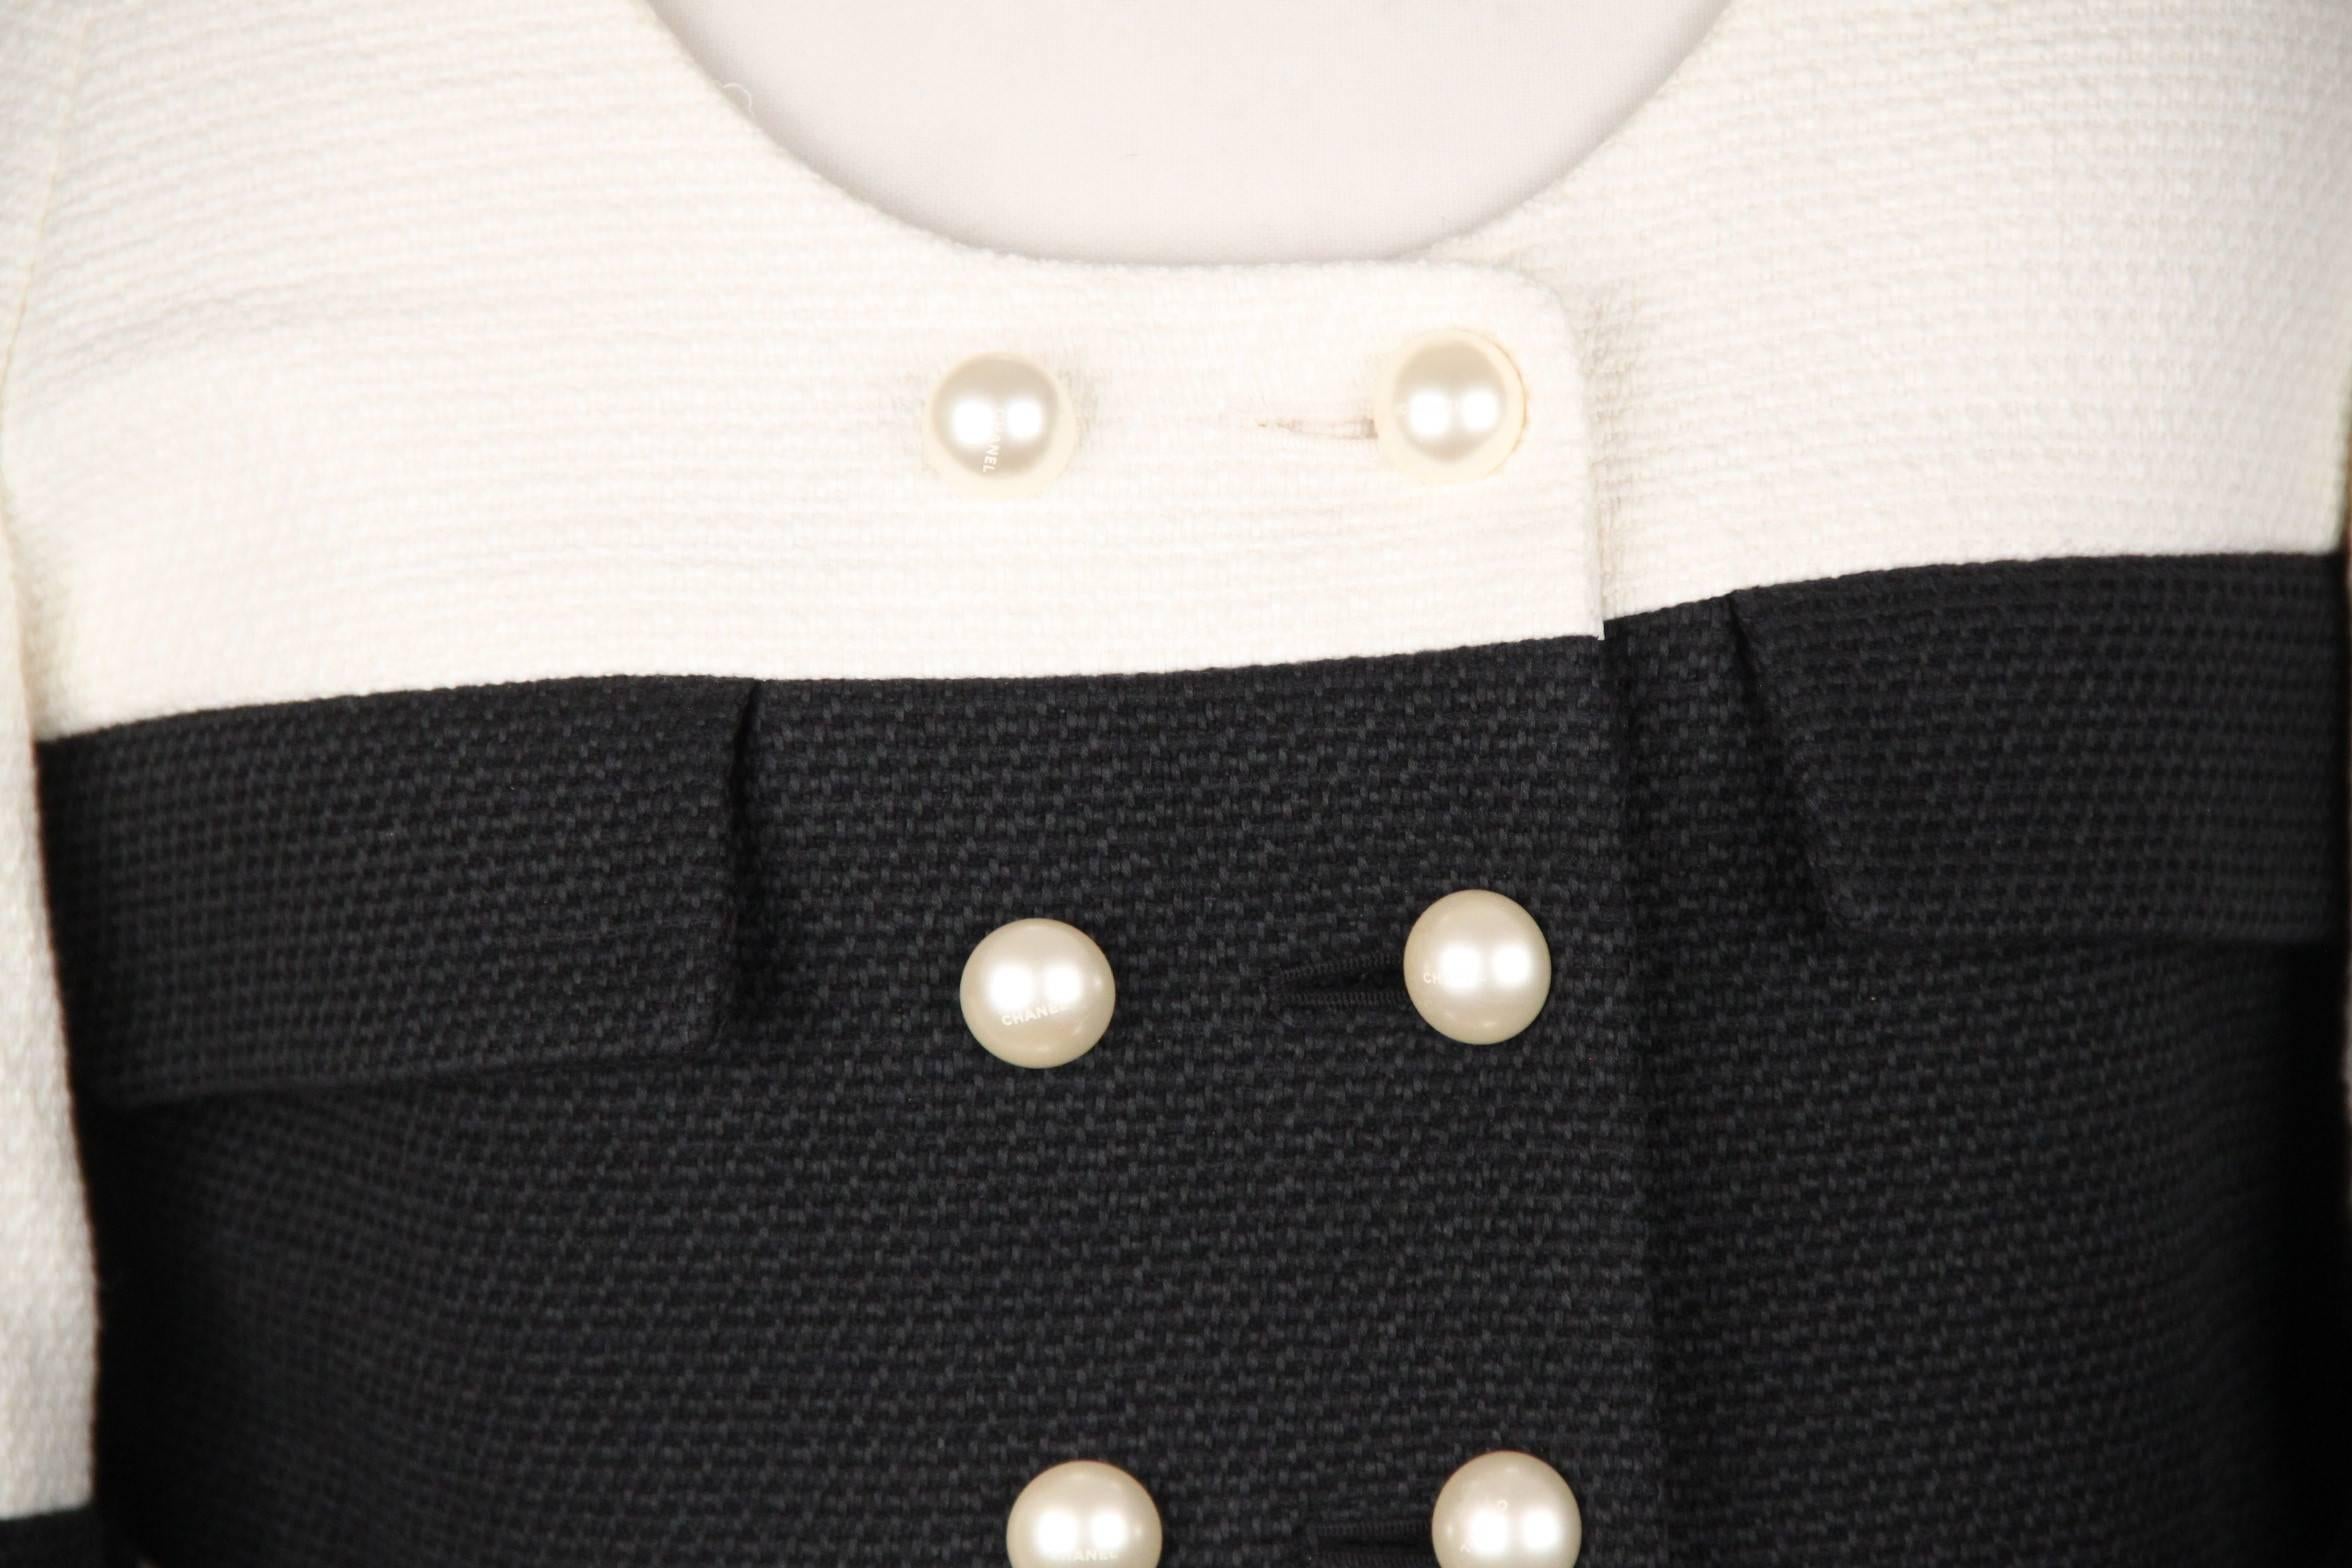 Women's CHANEL Black & White Cotton Blend CROPPED JACKET Size 40